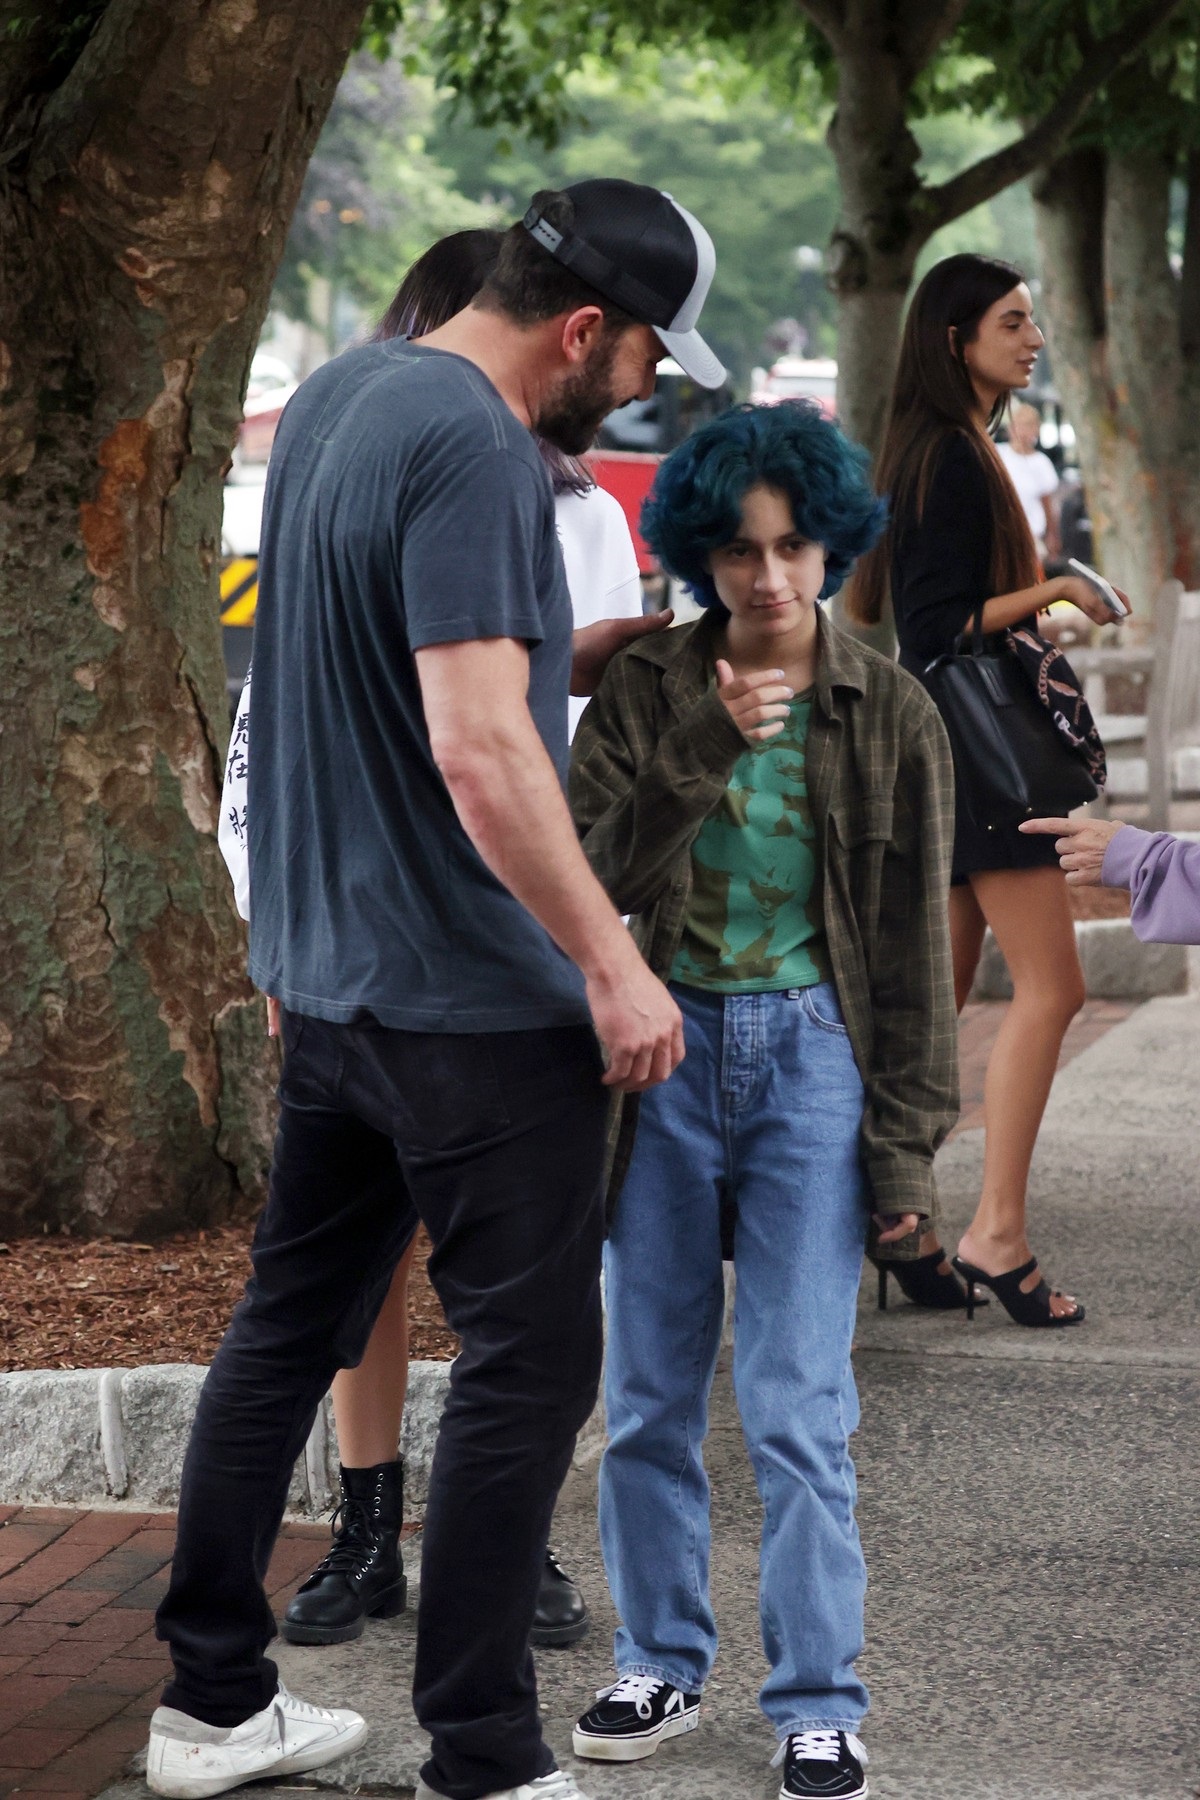 Ben Affleck îmbrăcat casual în blugi și tricou gri alături de fiica lui Jennifer Lopez, Emme care poartă un tricou verde și are părul albastru, după ce au mers împreună la o librărie din New York